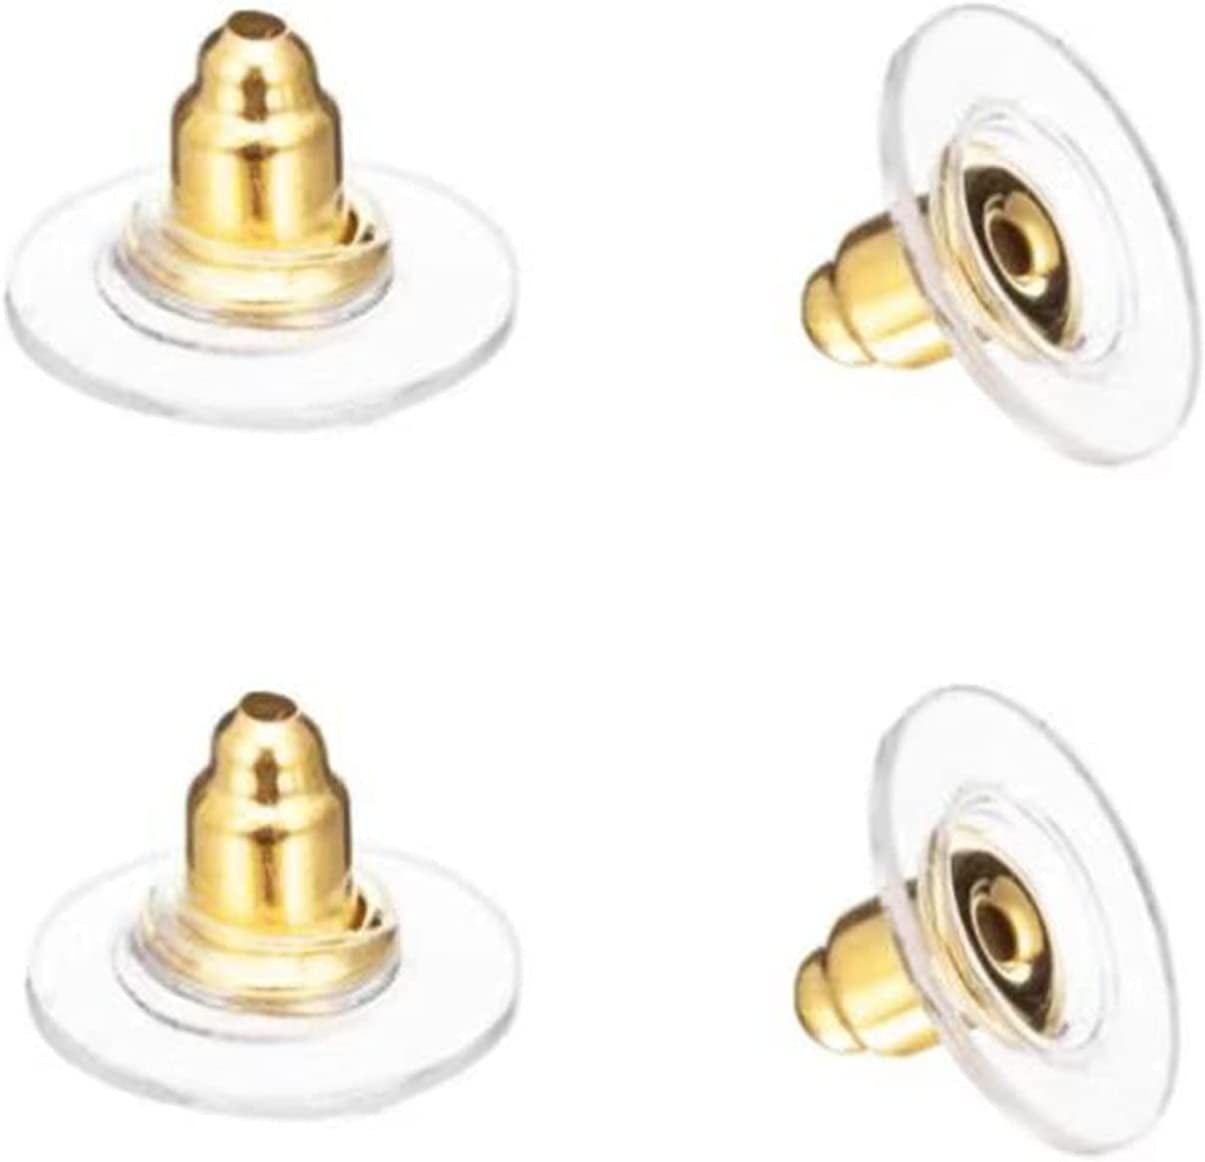  HONMEET 400pcs Screw Earring Backs Earring Backs for